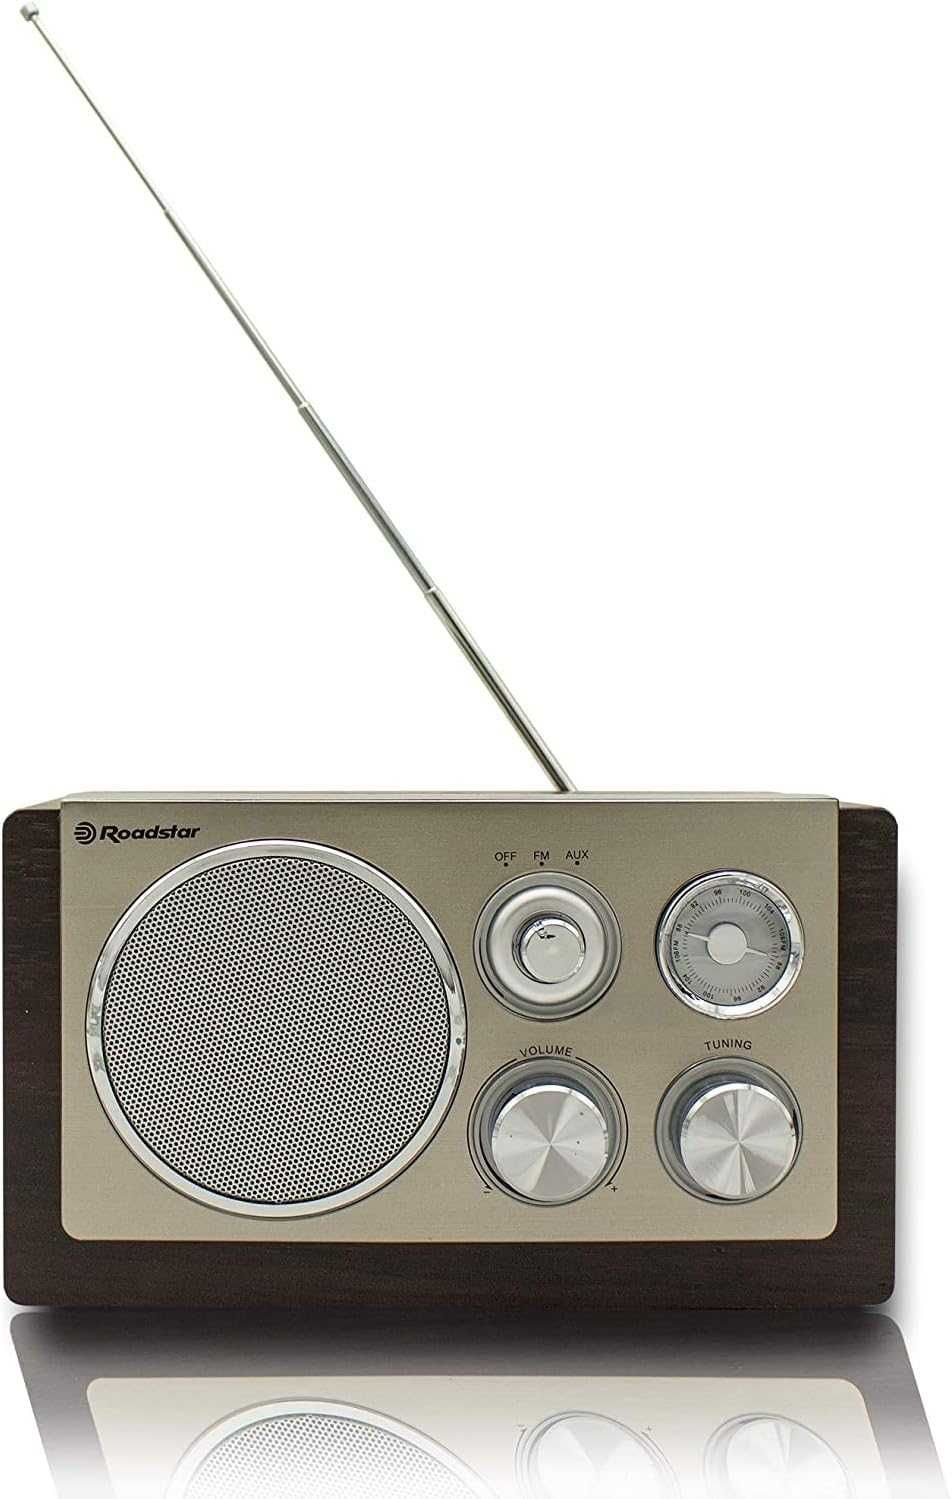 Roadstar HRA-1245NWD Radio FM Vintage retro sieciowe AUX USB SD 16W